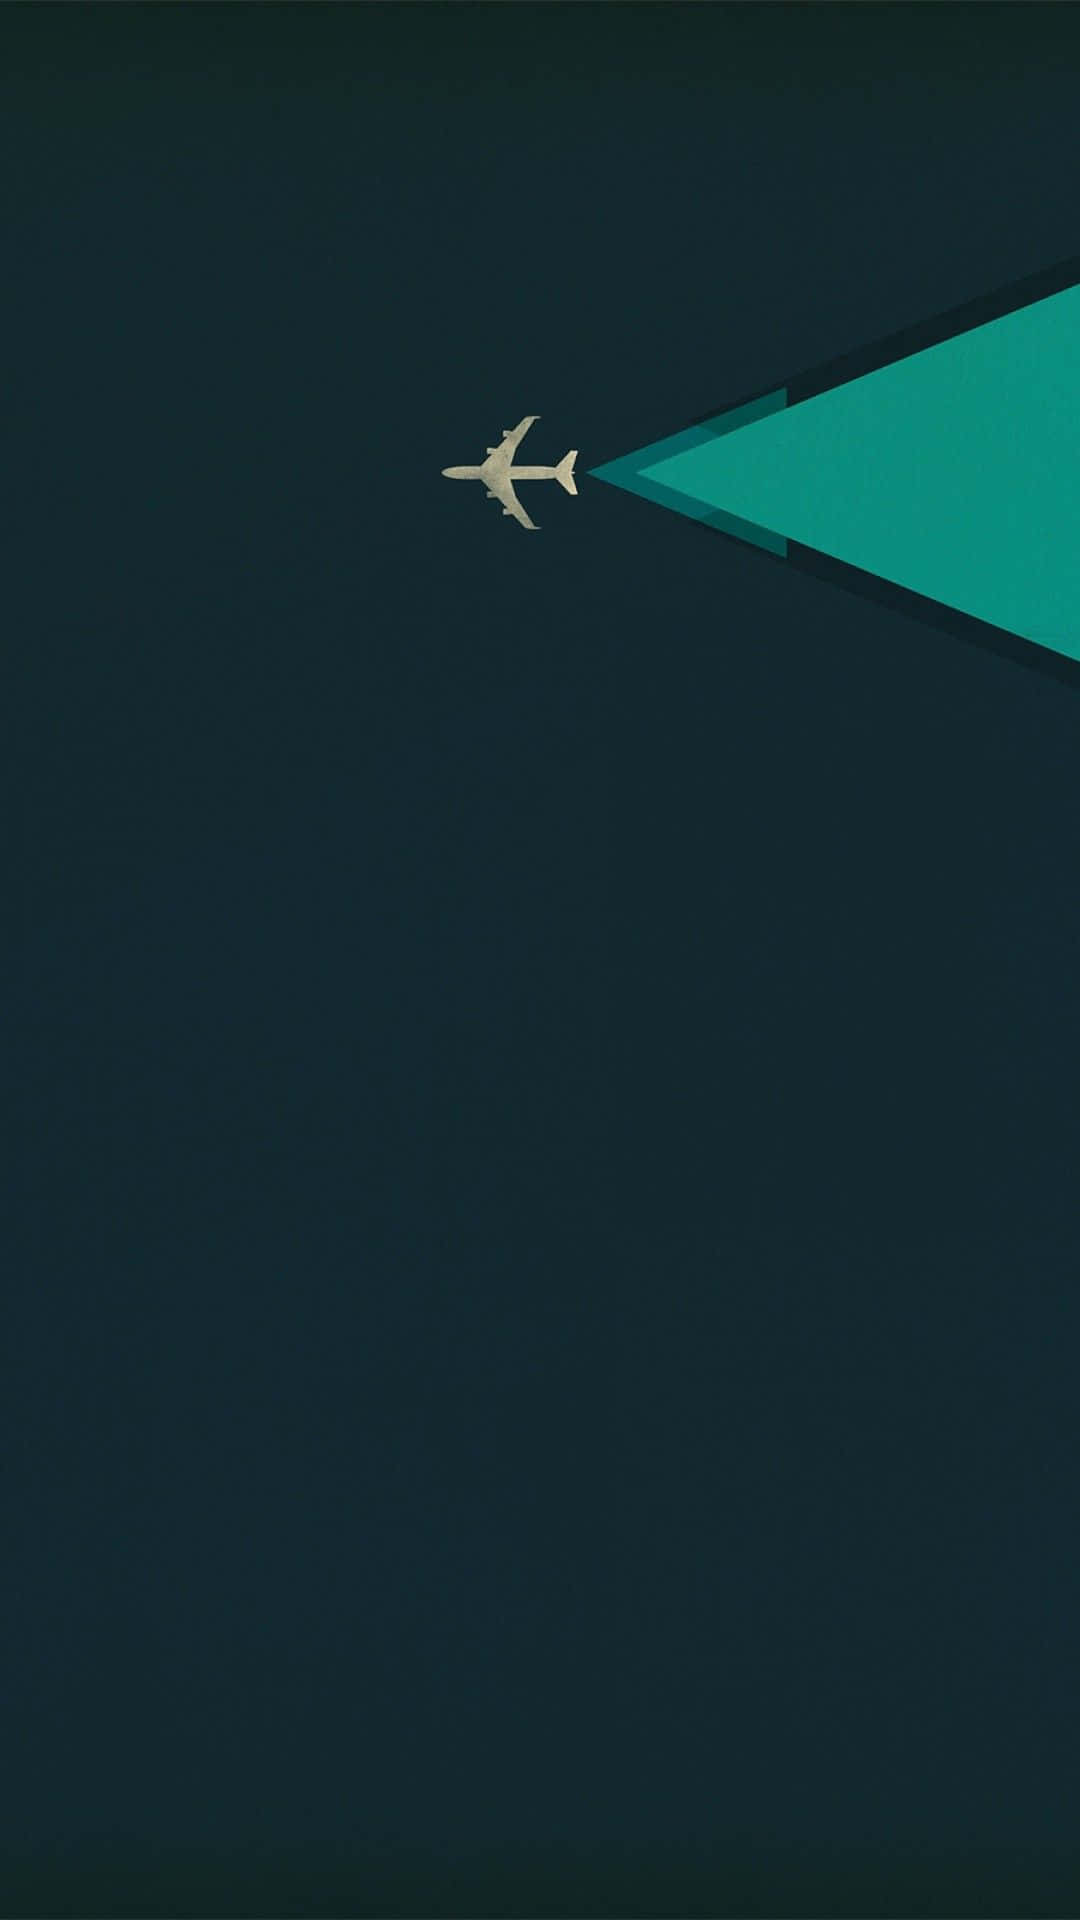 Kol cool iPhone Hjem Skærm Flyvemaskine Wallpaper